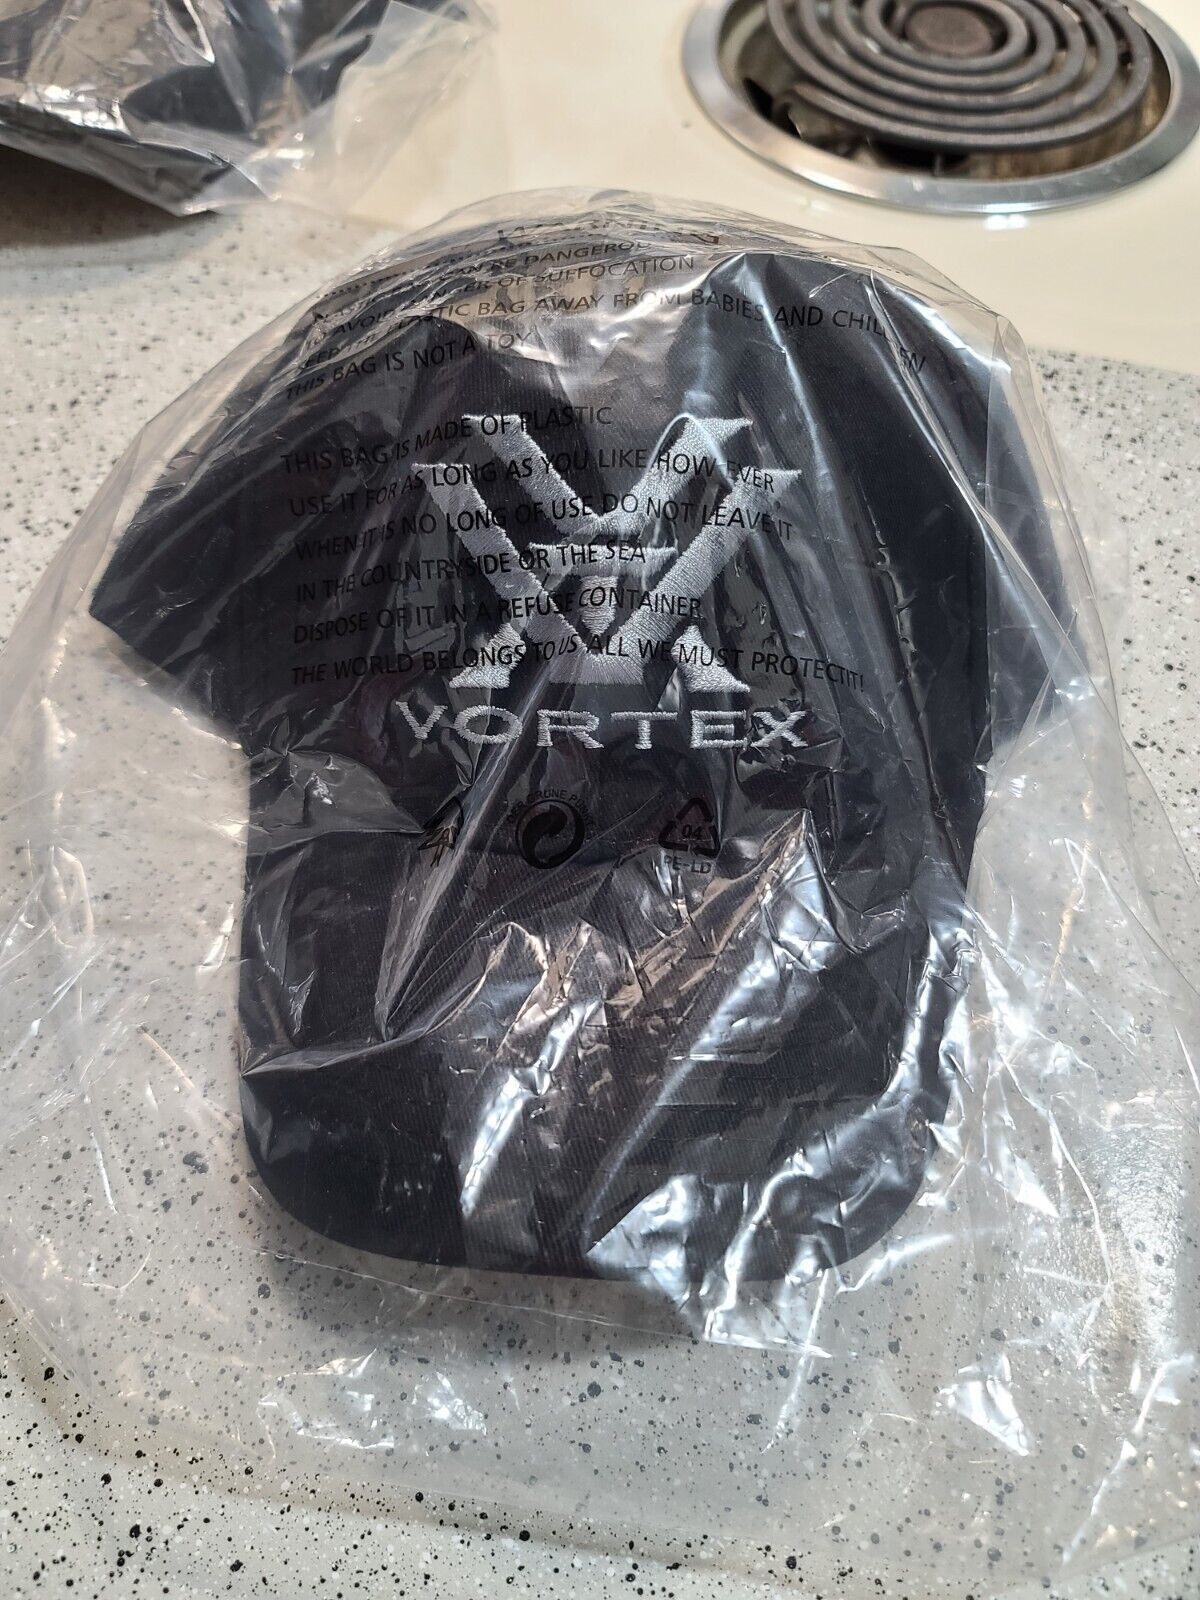 VORTEX OPTICS STYLE BLACK CAP.